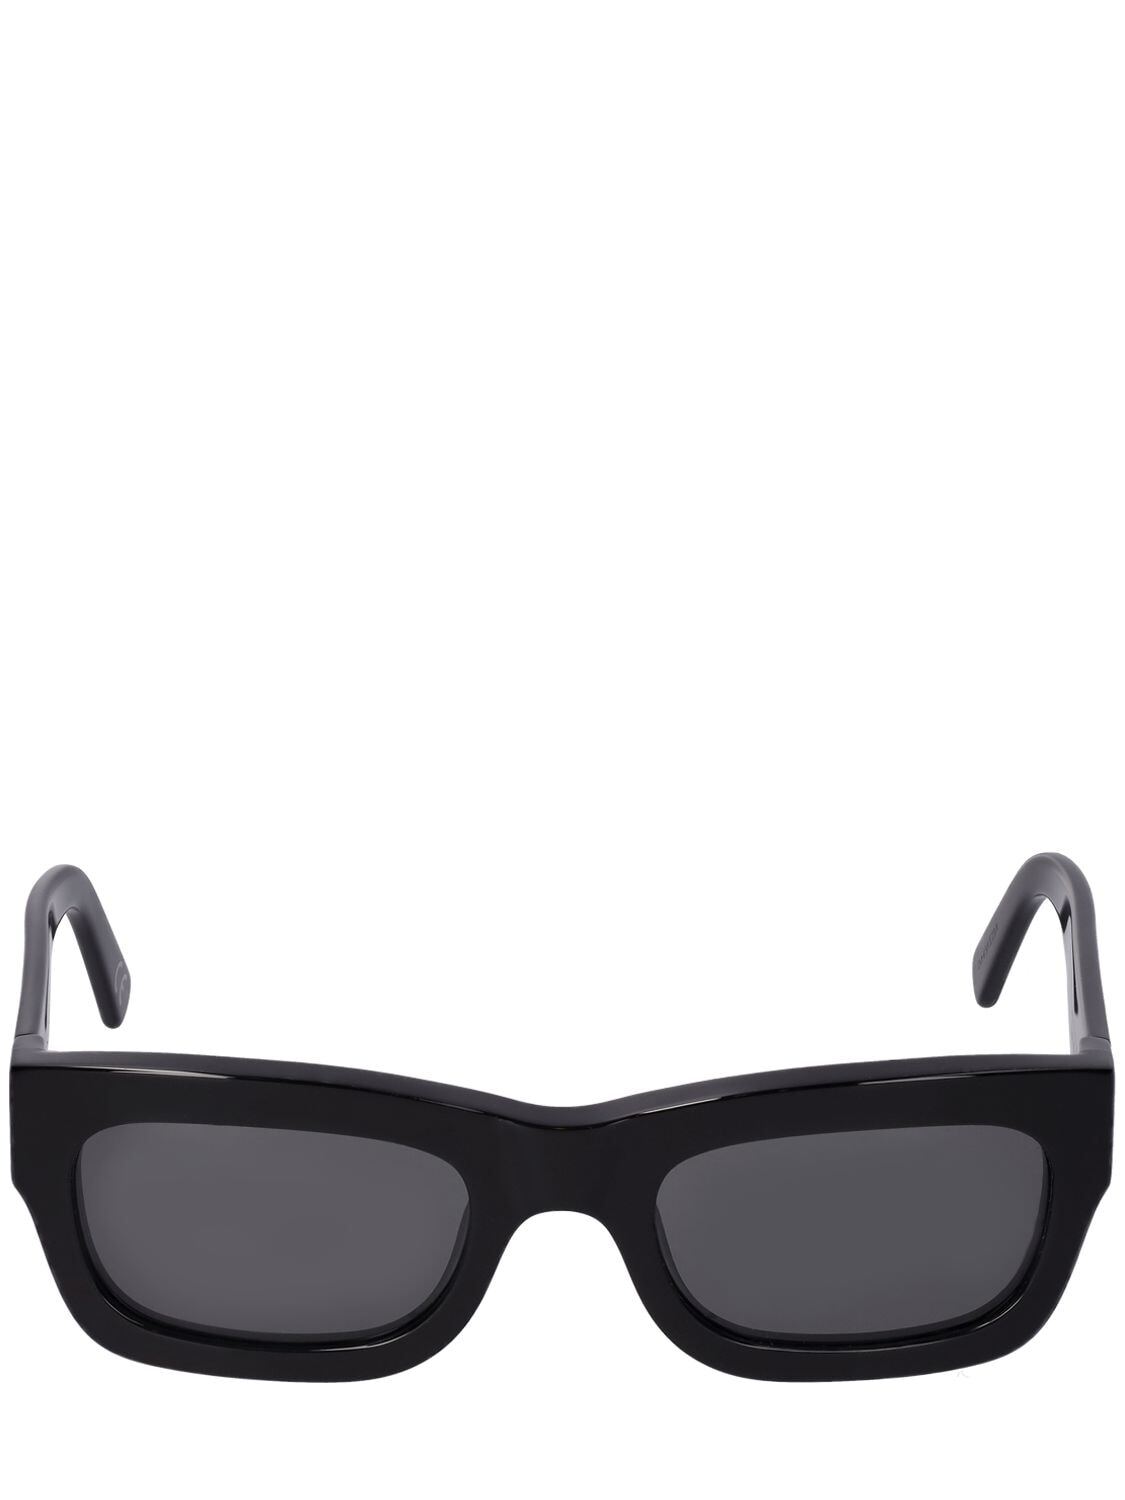 MARNI Kawasan Falls Squared Sunglasses in black / grey